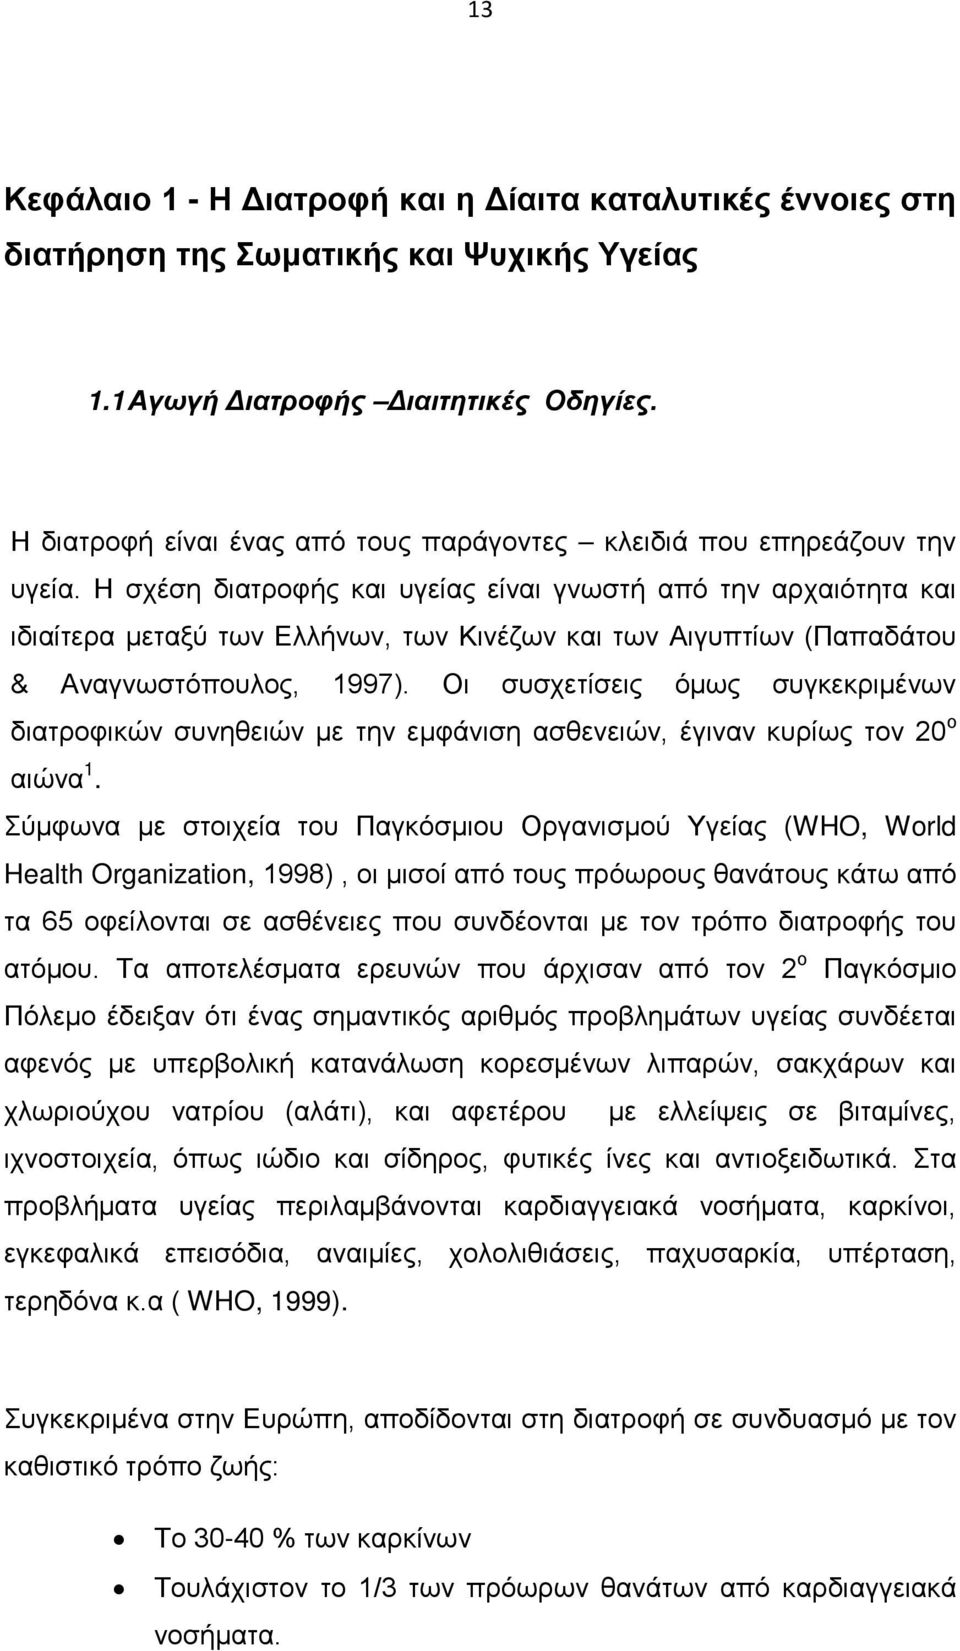 Η σχέση διατροφής και υγείας είναι γνωστή από την αρχαιότητα και ιδιαίτερα μεταξύ των Ελλήνων, των Κινέζων και των Αιγυπτίων (Παπαδάτου & Αναγνωστόπουλος, 1997).